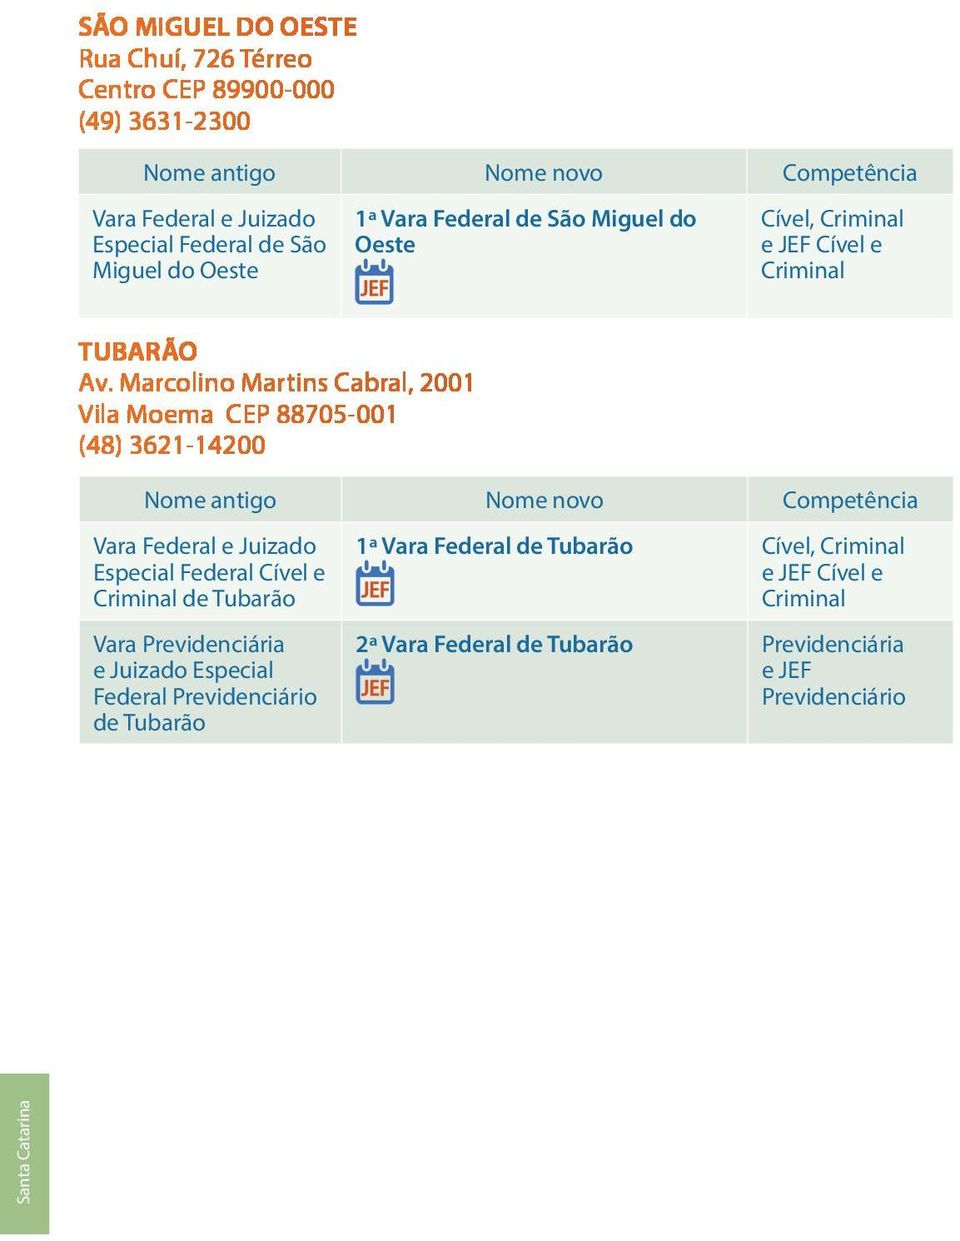 Marcolino Martins Cabral, 2001 Vila Moema CEP 88705-001 (48) 3621-14200 Cível e de Tubarão Vara